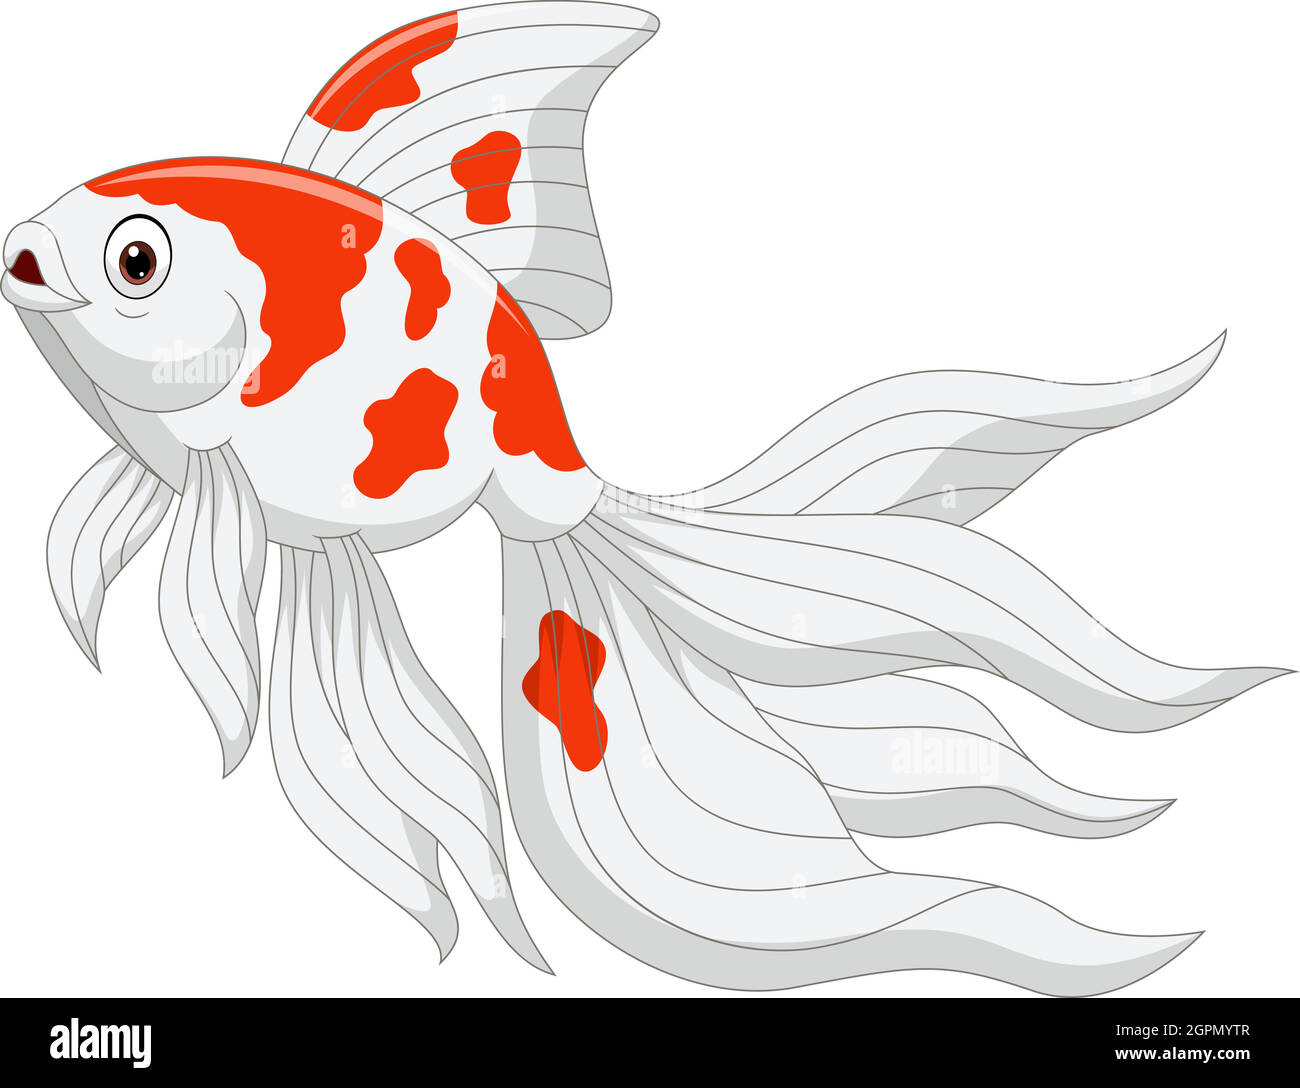 Dessin animé de poissons rouges sur fond blanc Illustration de Vecteur